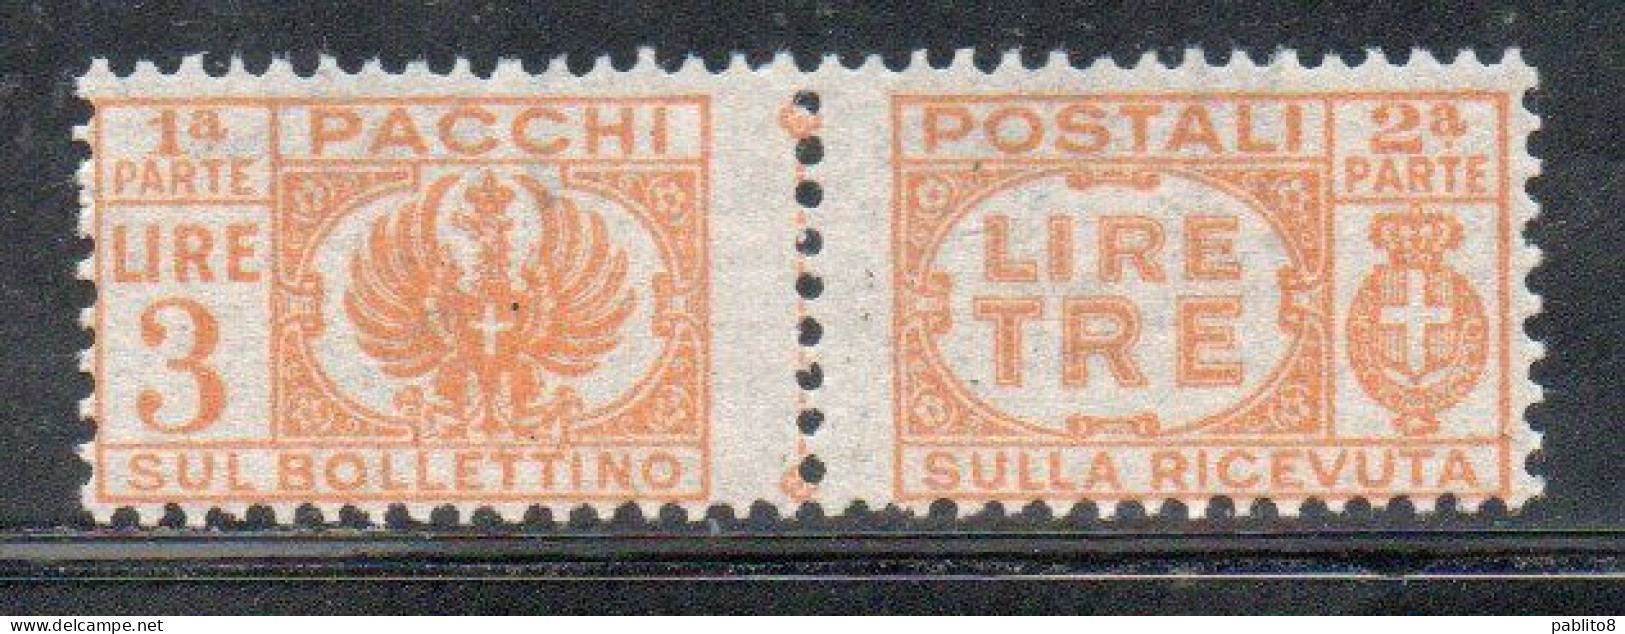 ITALIA REGNO ITALY KINGDOM 1946 LUOGOTENENZA PACCHI POSTALI SENZA FASCI PARCEL POST LIRE 3 MNH - Colis-postaux